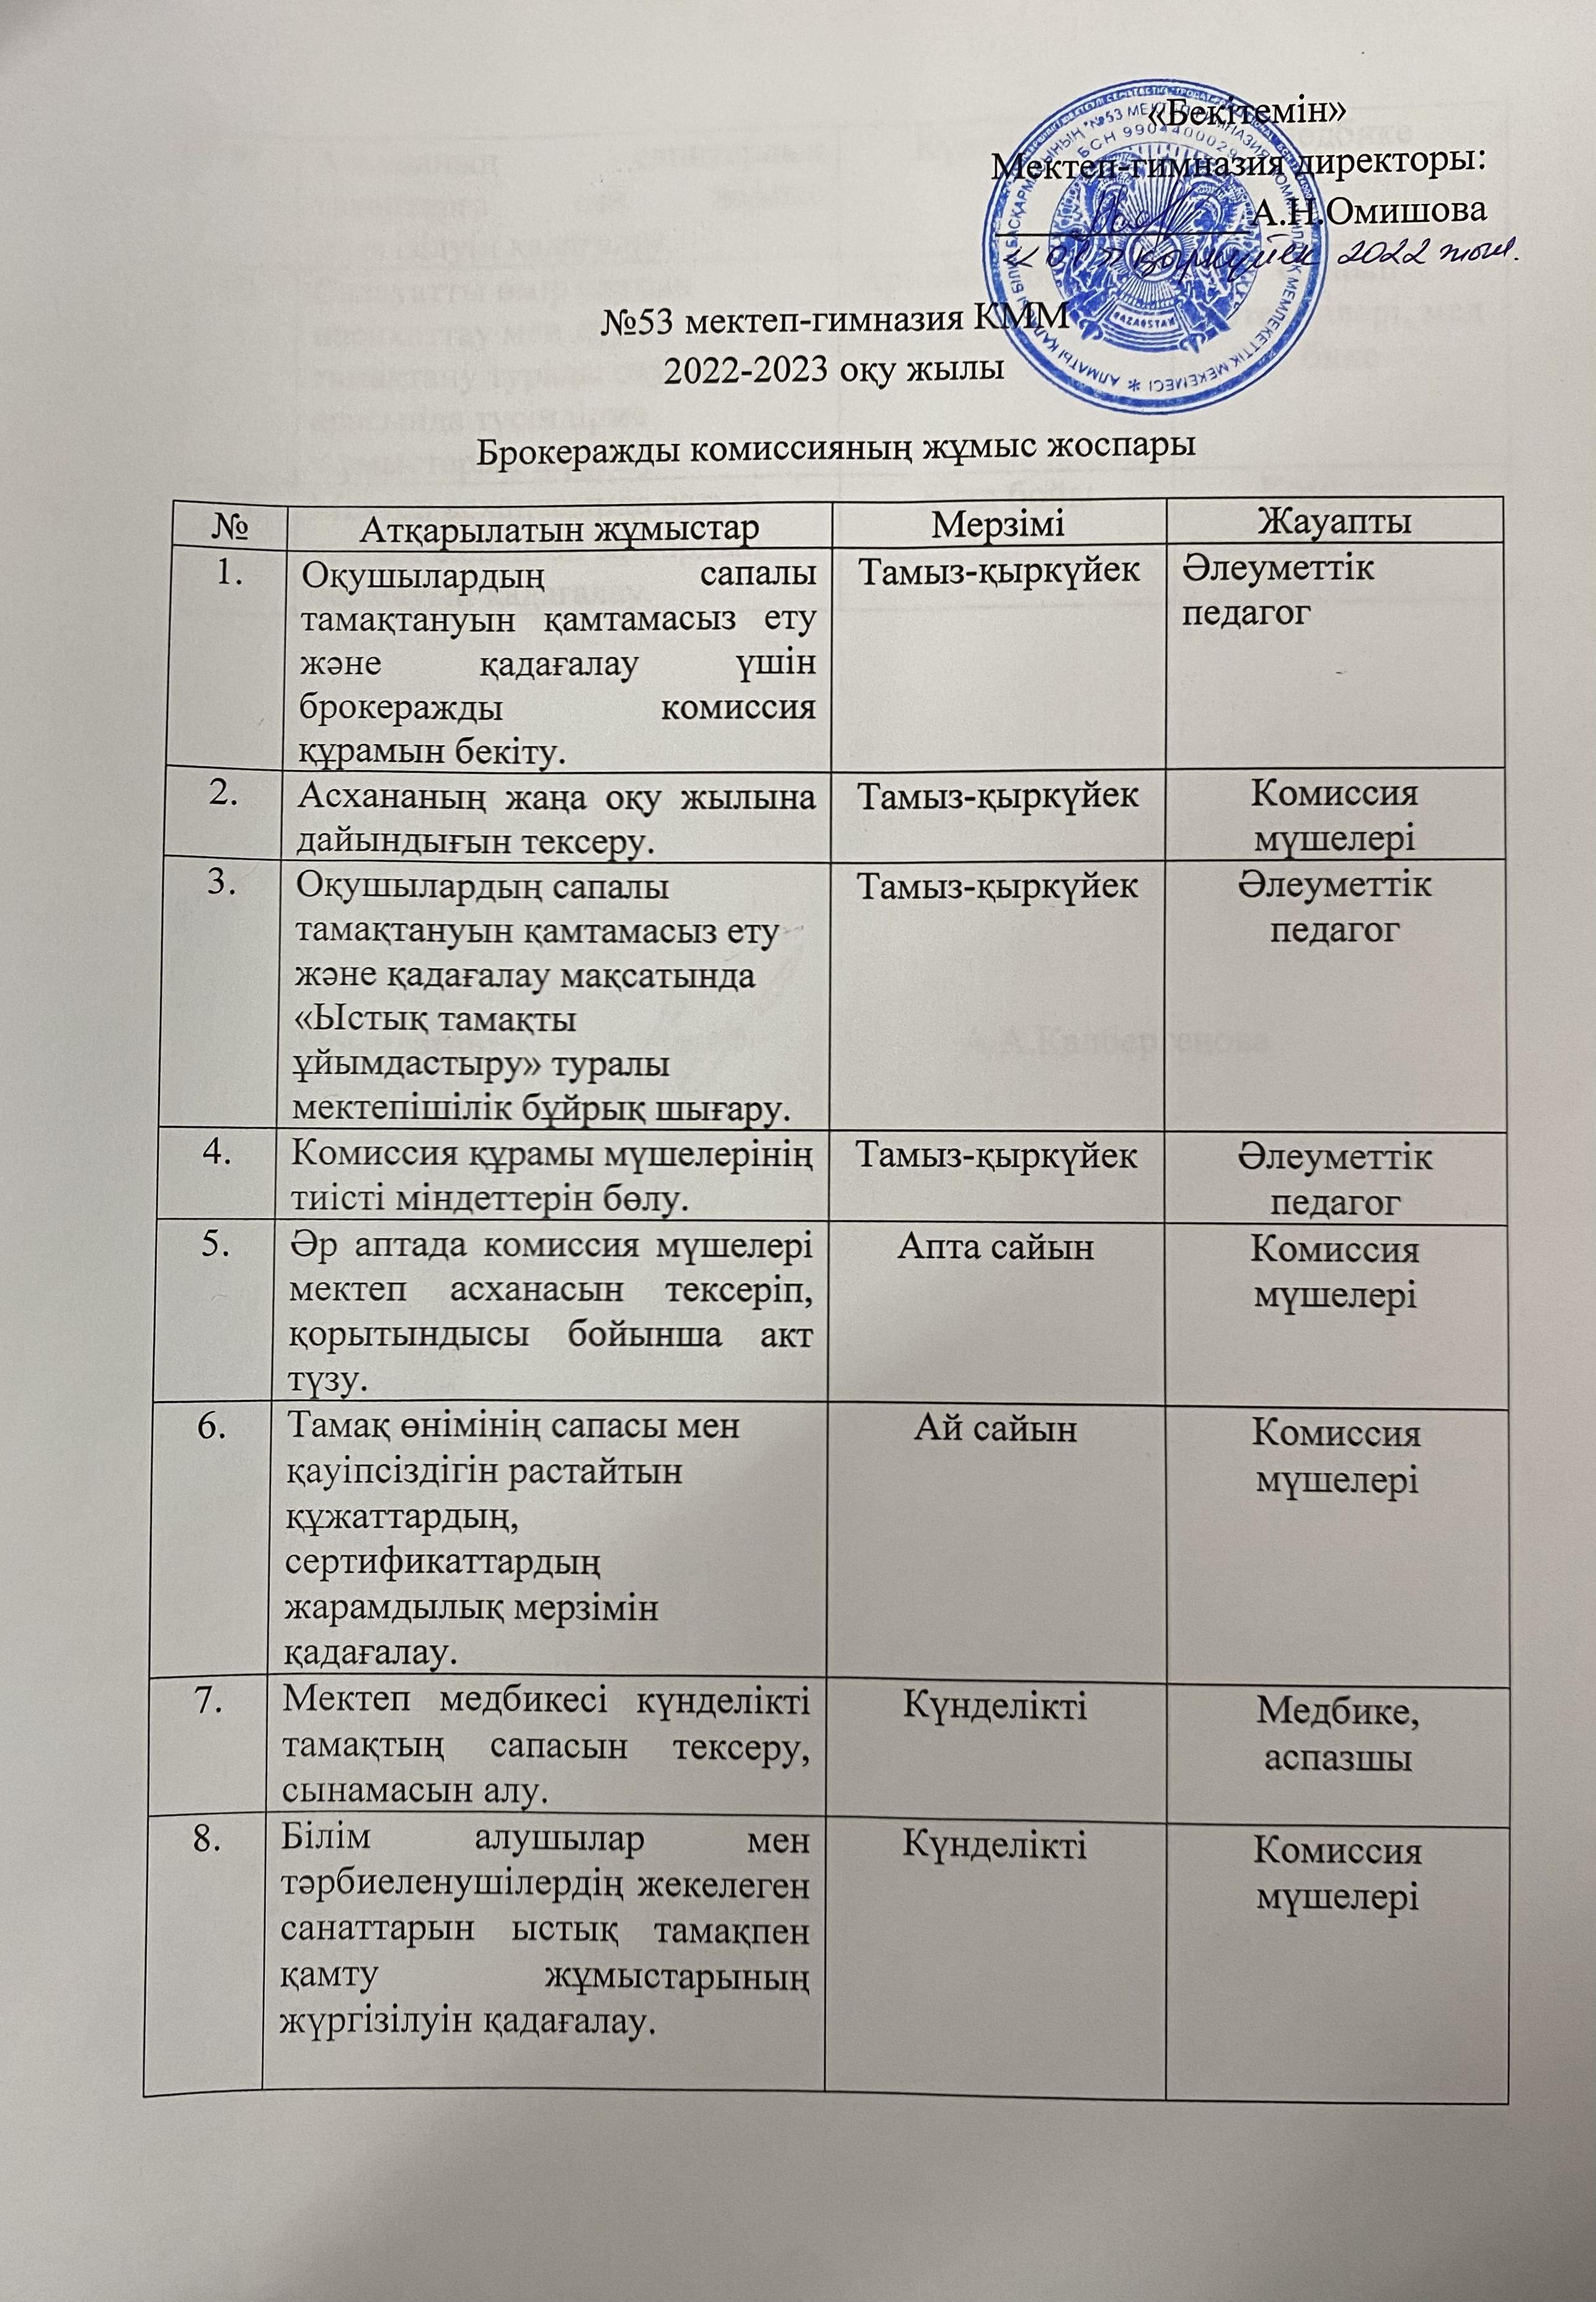 Бракераджық комиссияның құрылуы және жұмыс жоспары (2022-2023)